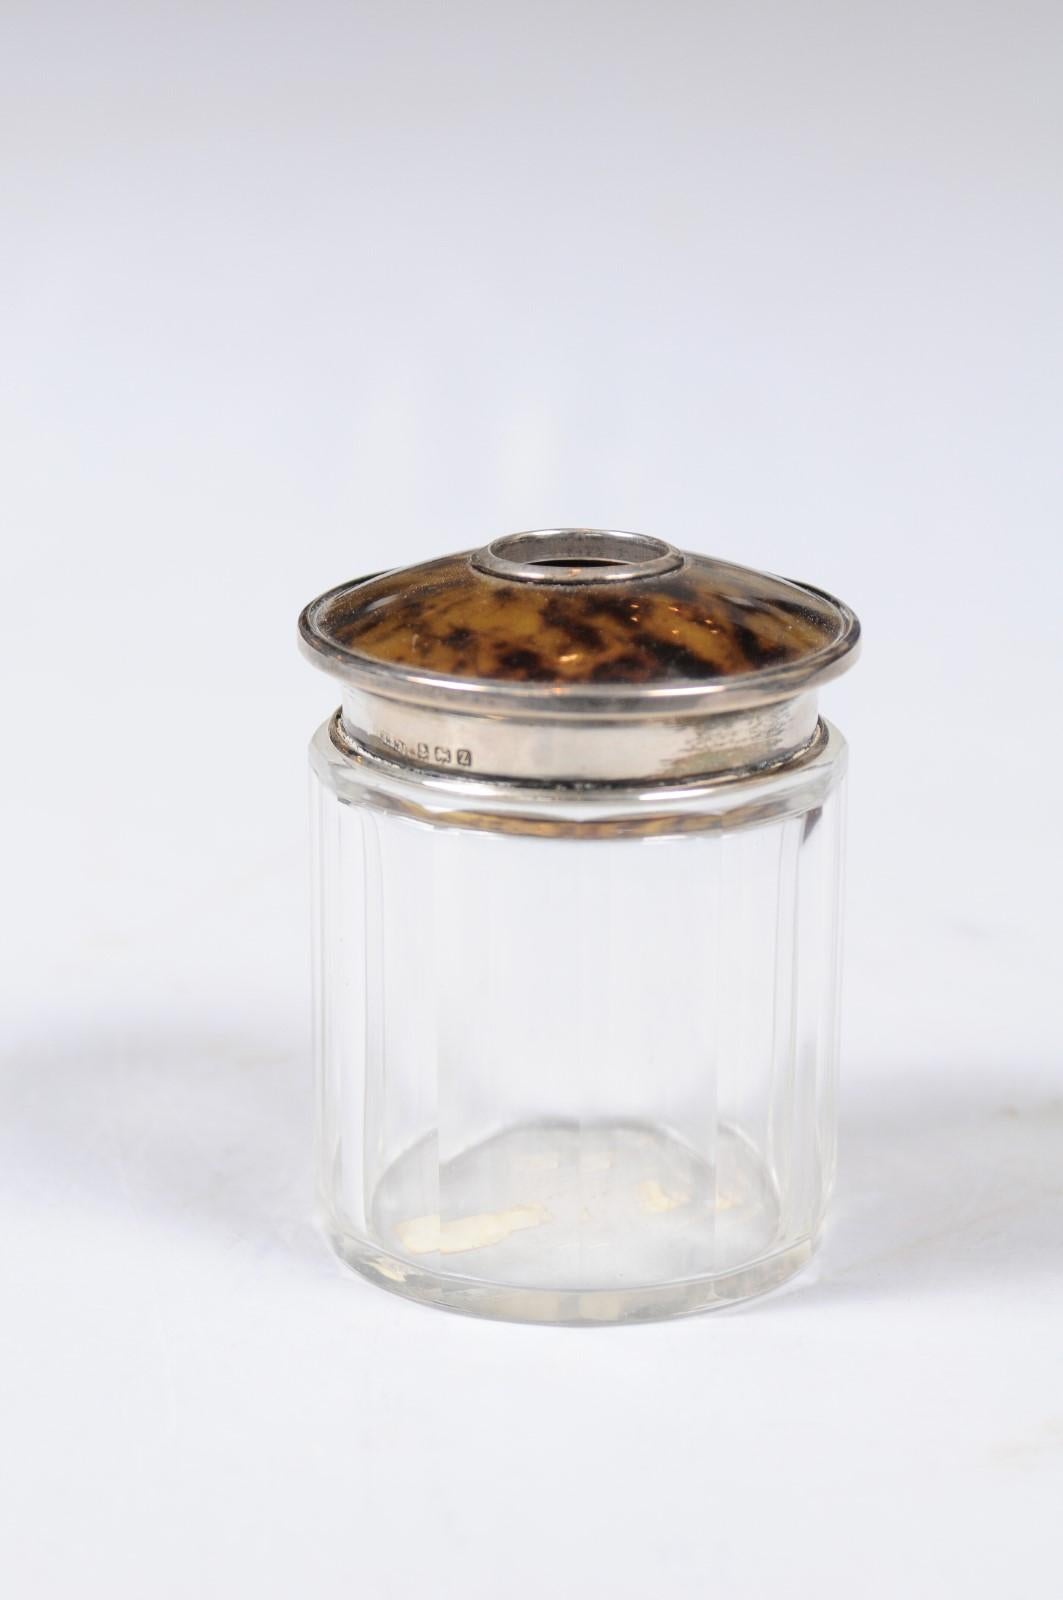 Eine englische Edwardianische Kristalltoilettenflasche aus dem frühen 20. Jahrhundert mit silbernen Akzenten und konischem Deckel. Dieser zarte Flakon für Toilettenartikel, der Anfang des 20. Jahrhunderts in England entstand, besteht aus einem